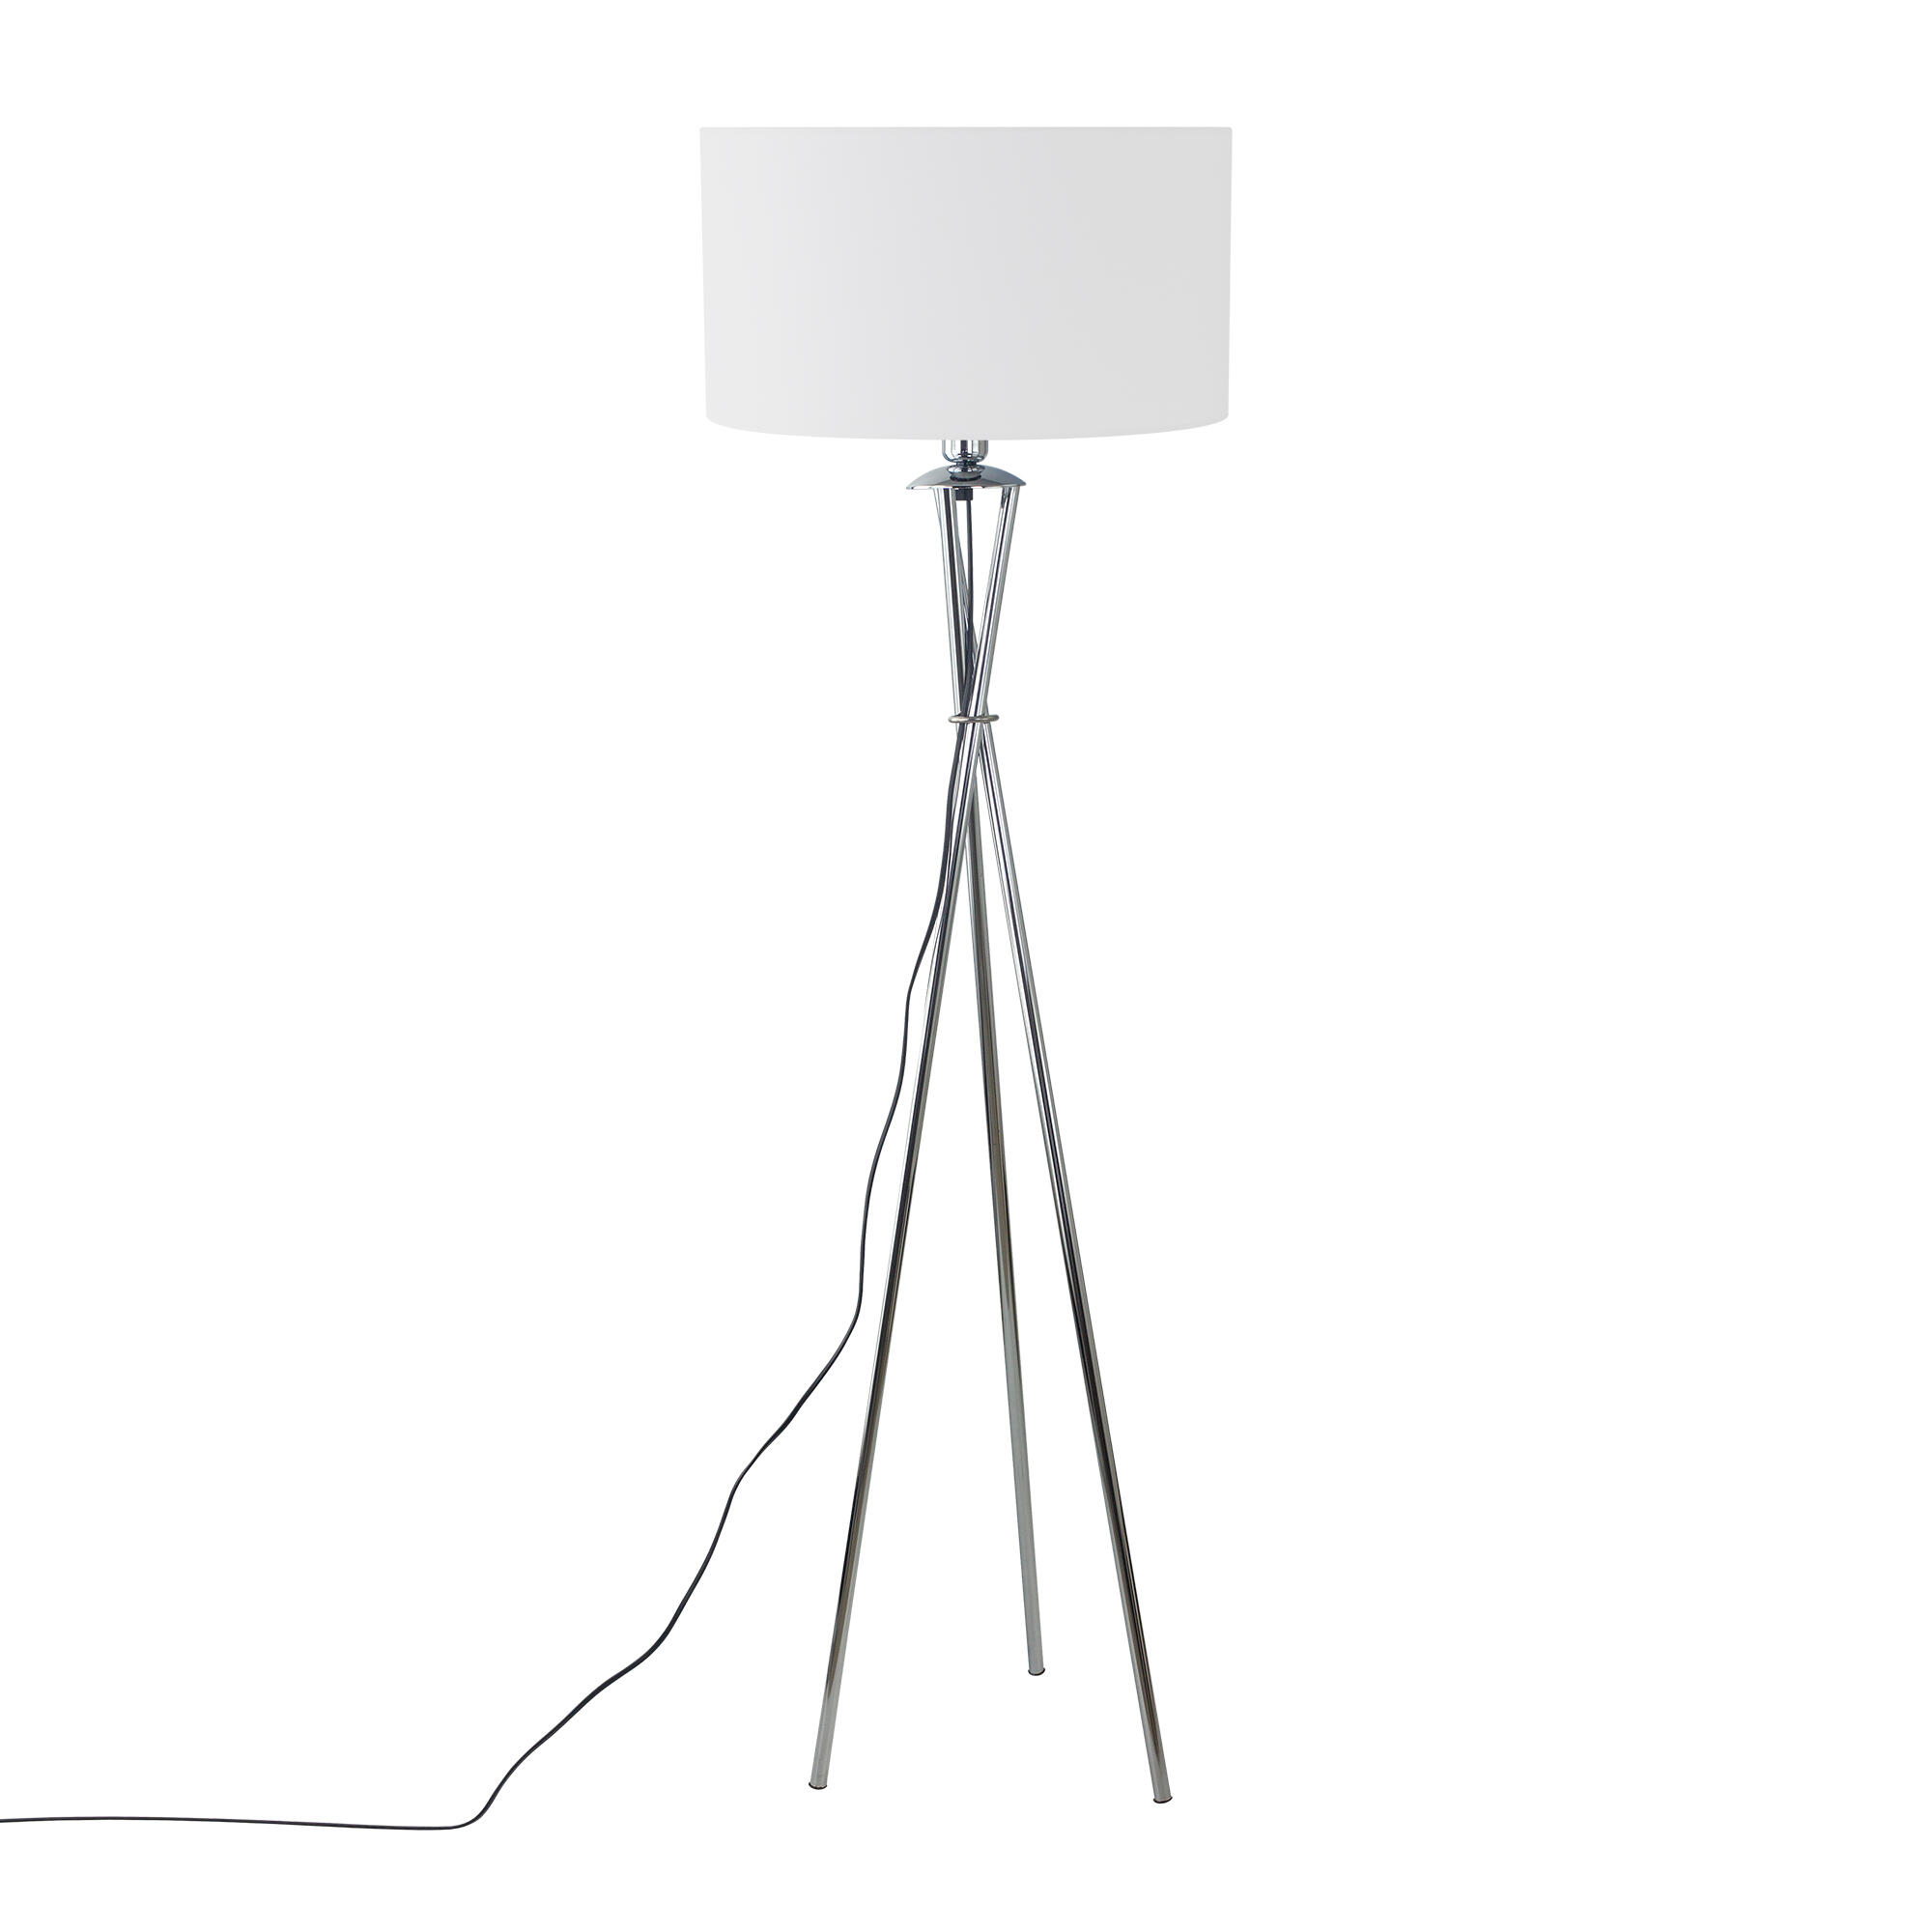 Lámpara de pie con trípode metálico cromado,pantalla blanca,casquillo e27,154 cm